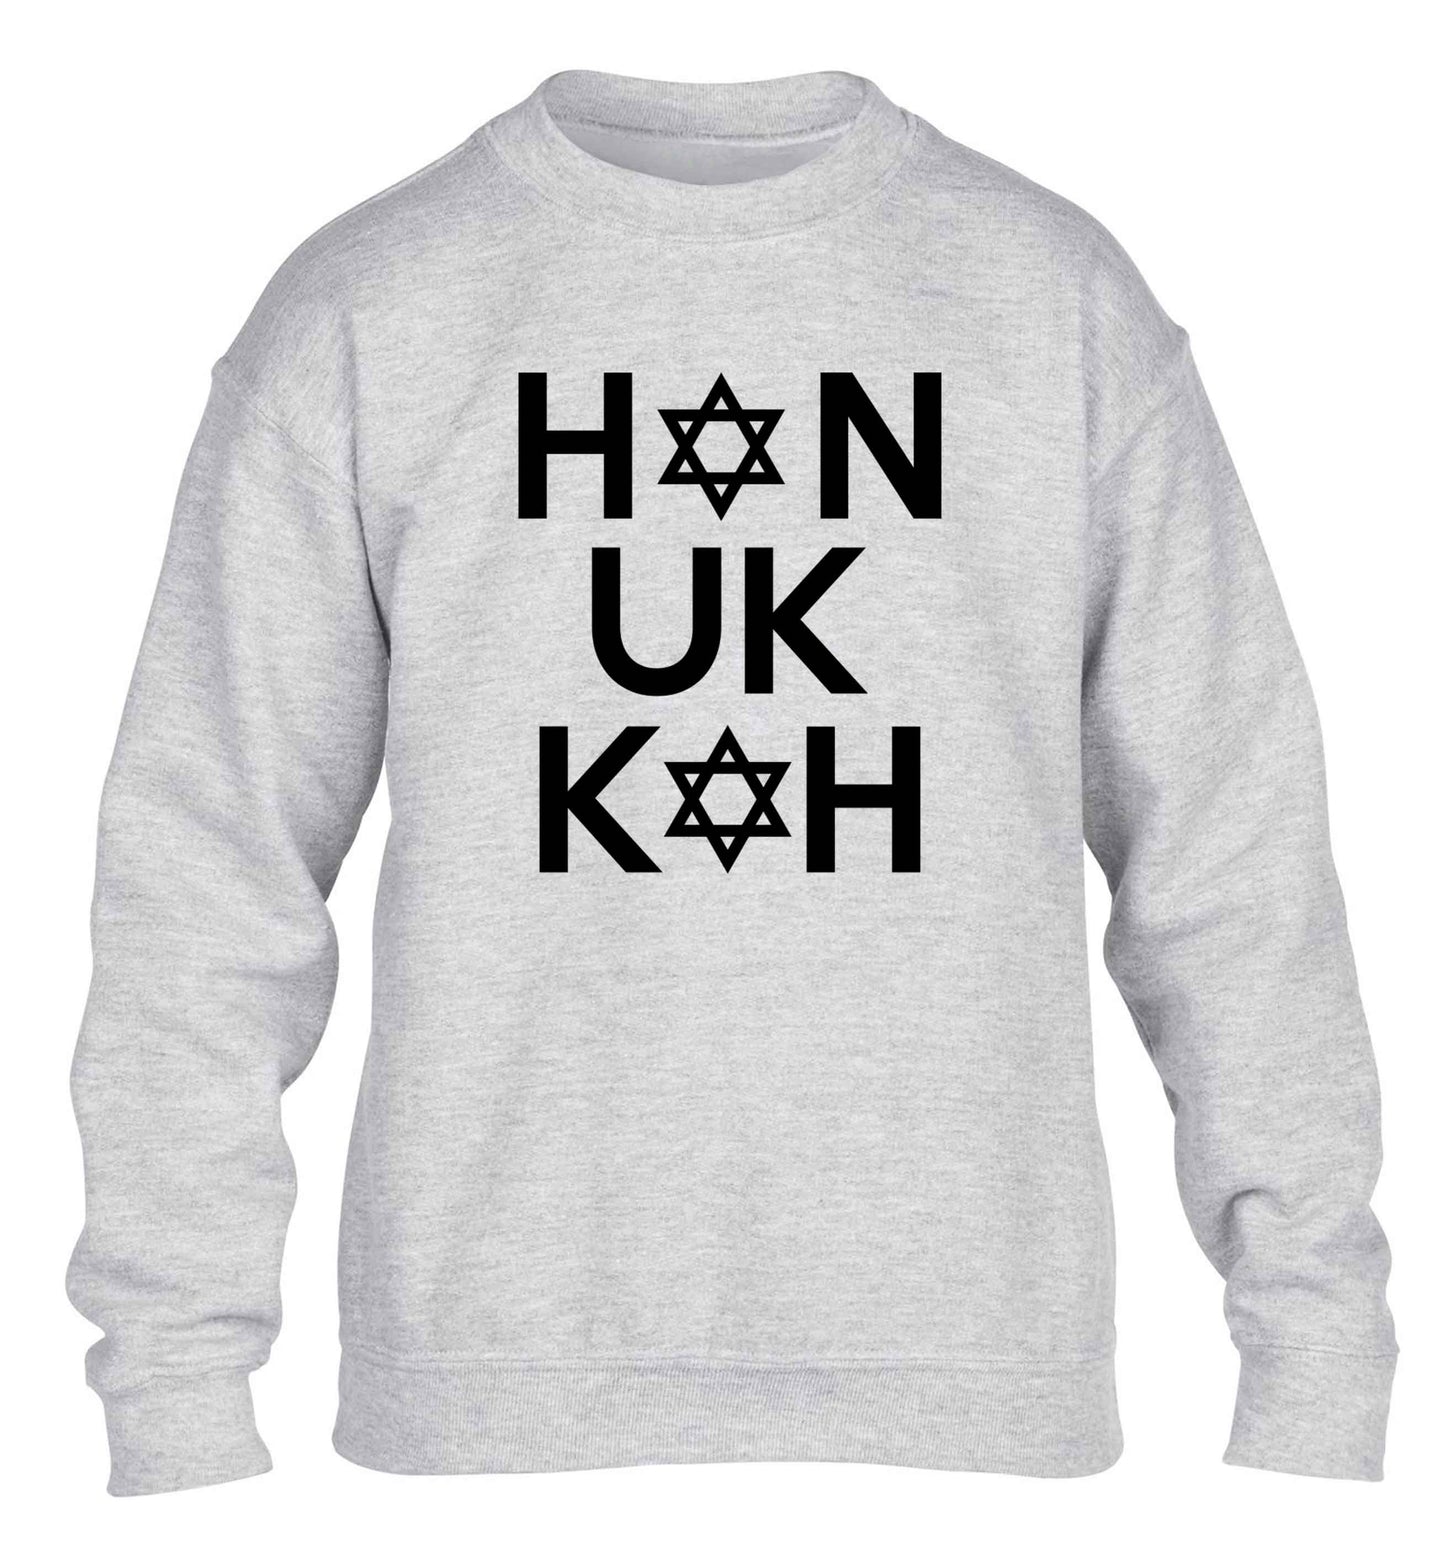 Han uk kah  Hanukkah star of david children's grey sweater 12-13 Years